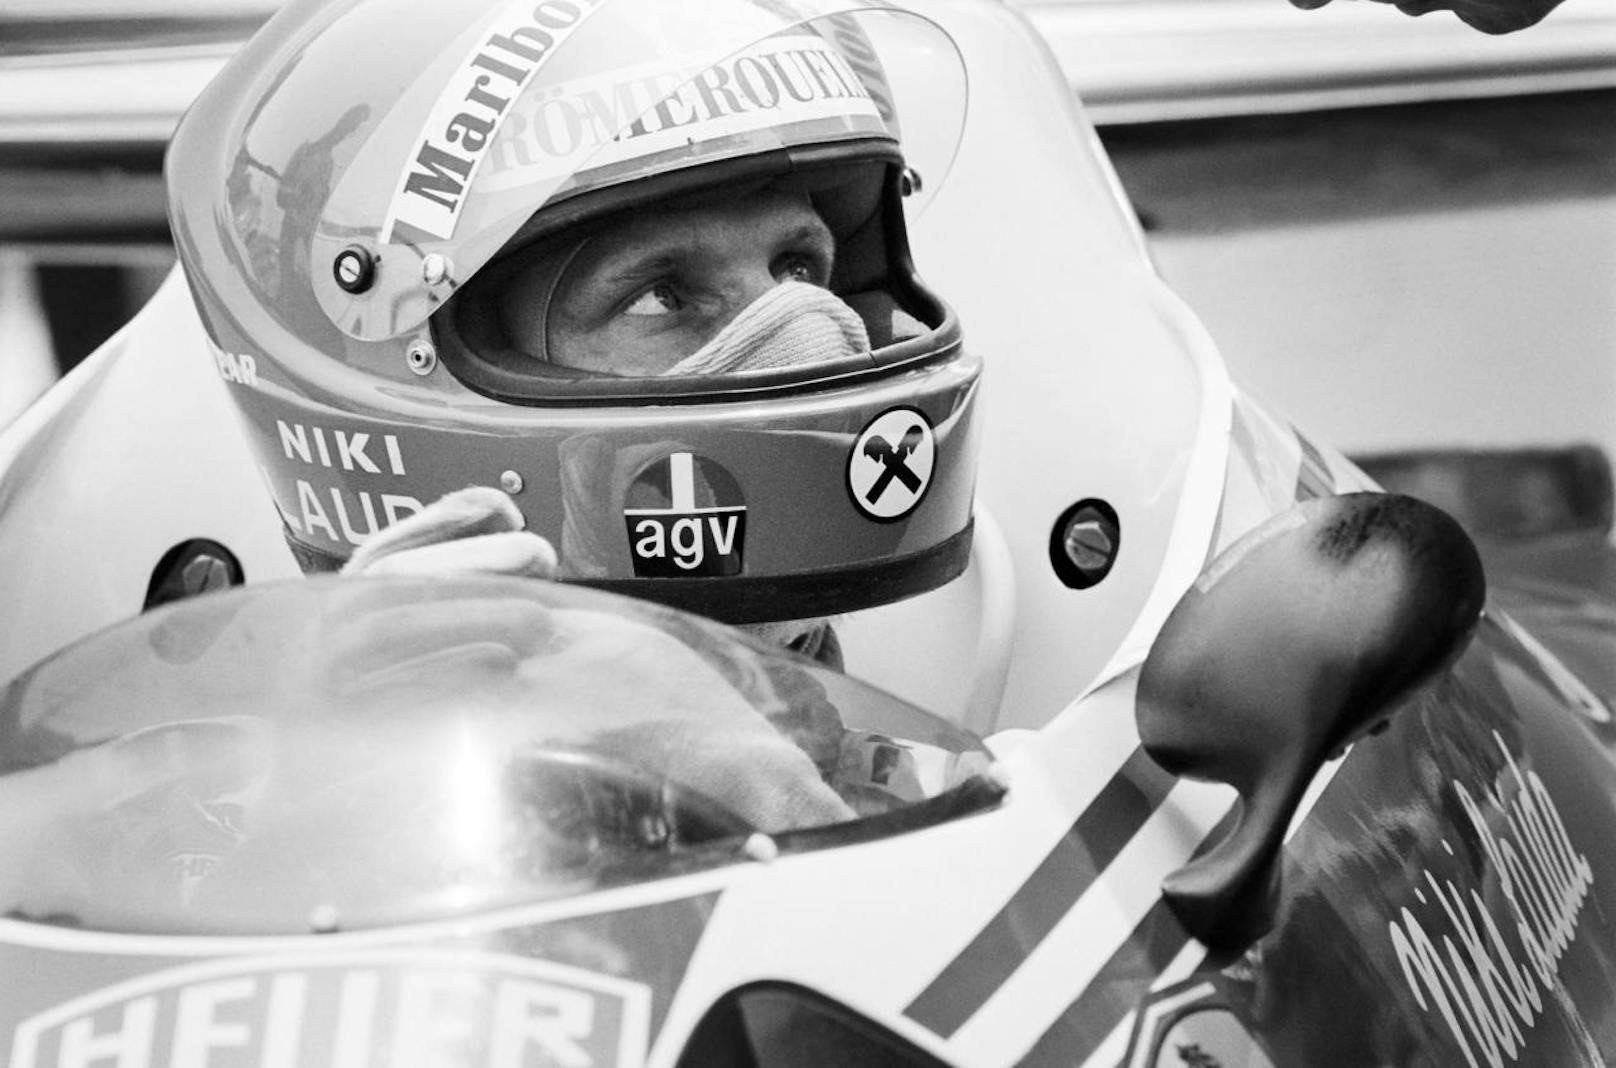 Im Alter von 70 Jahren verstarb Österreichs Motorsport-Ikone Niki Lauda im Mai 2019. 

Seine Karriere in Bildern: Bevor er seine große F1-Laufbahn begann, startete er in der Formel 3 und der Formel 2, zusätzlich fuhr er Langstrecken-Rennen, um Geld für die Formel 1 zu verdienen.